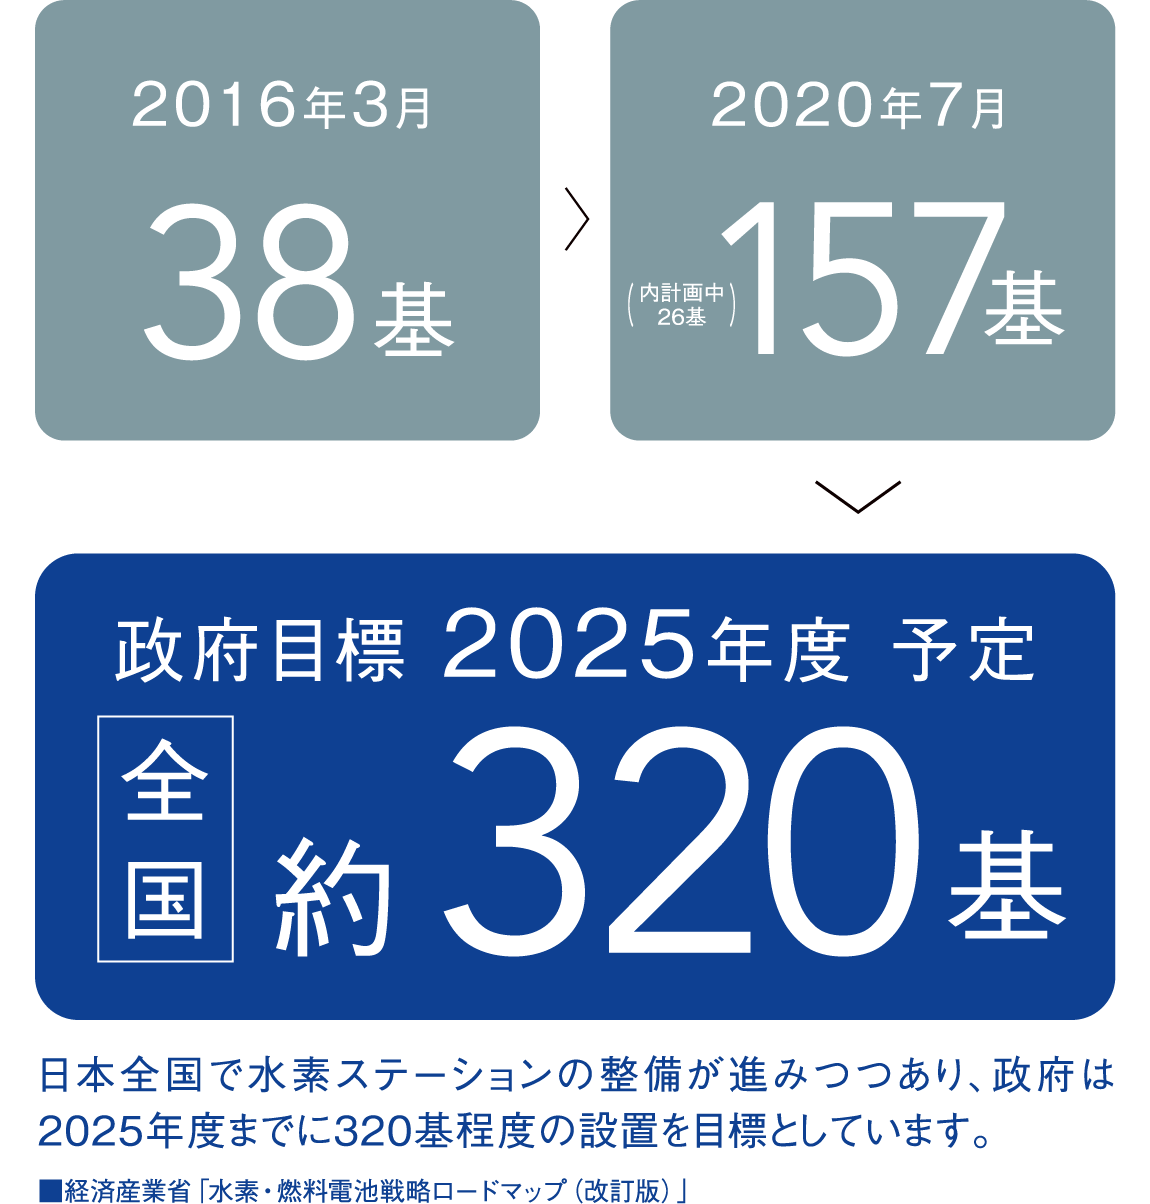 2016年3月 38基 2020年7月(内計画中26基)157基 政府目標 2025年度 予定 全国 約320基 日本全国で水素ステーションの整備が進みつつあり、政府は2025年度までに320基程度の設置を目標としています。■経済産業省「水素・燃料電池戦略ロードマップ（改訂版）」